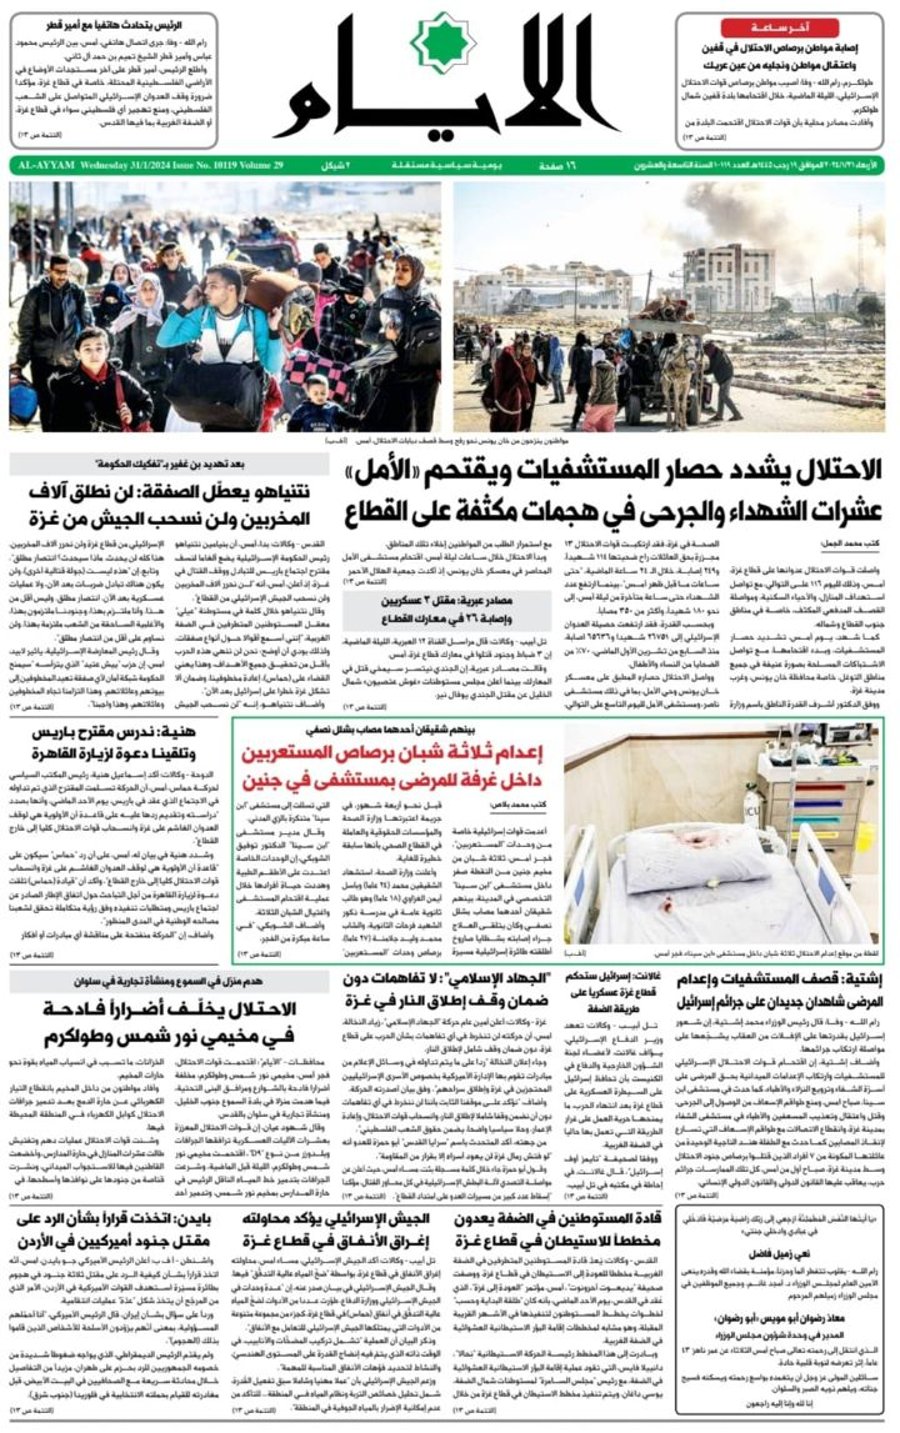 העיתונים הפלסטינים מקוננים: "הכיבוש מגביר את המצור"